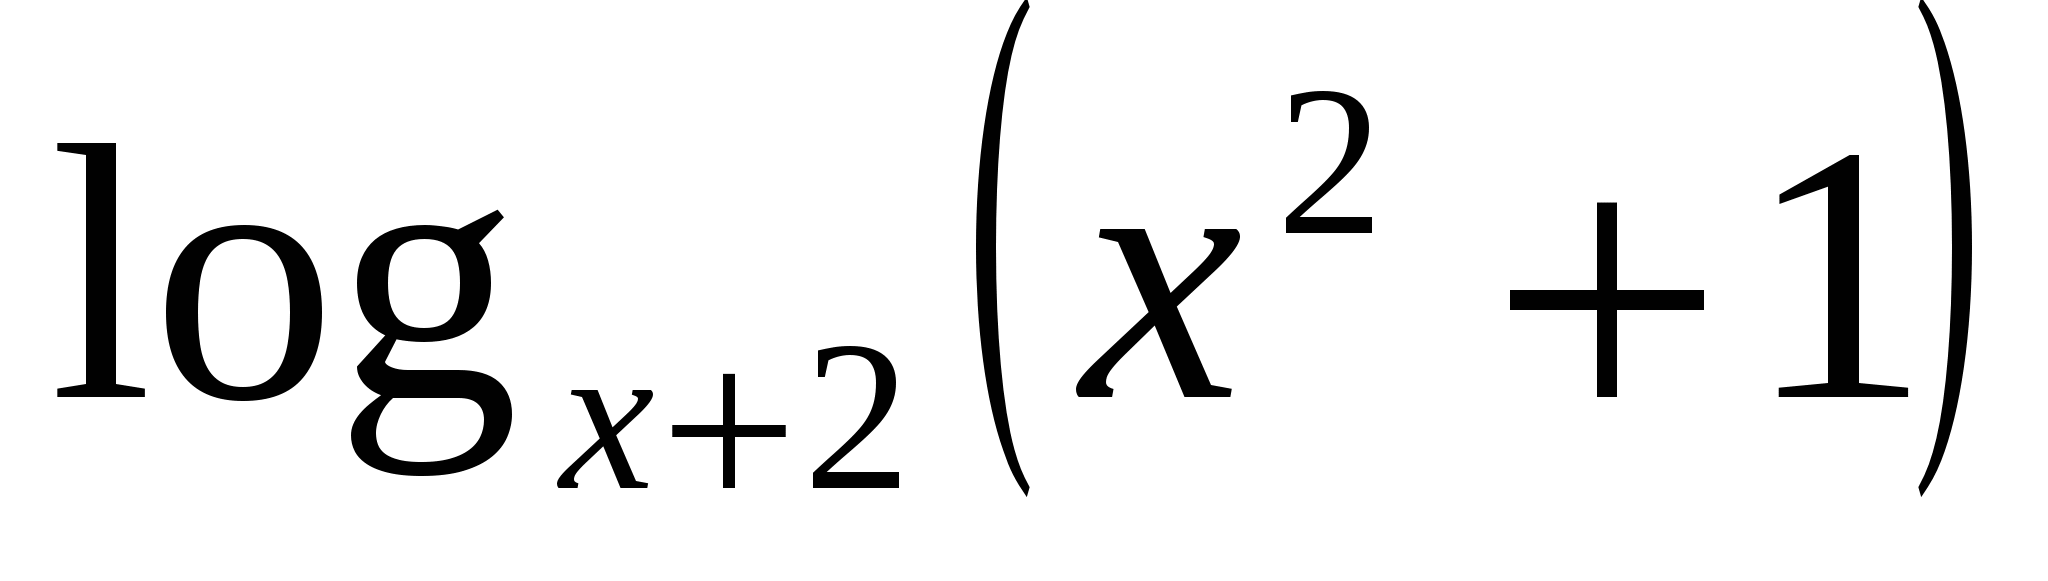 Урок по алгебре для 11 класса «Решение логарифмических уравнений»